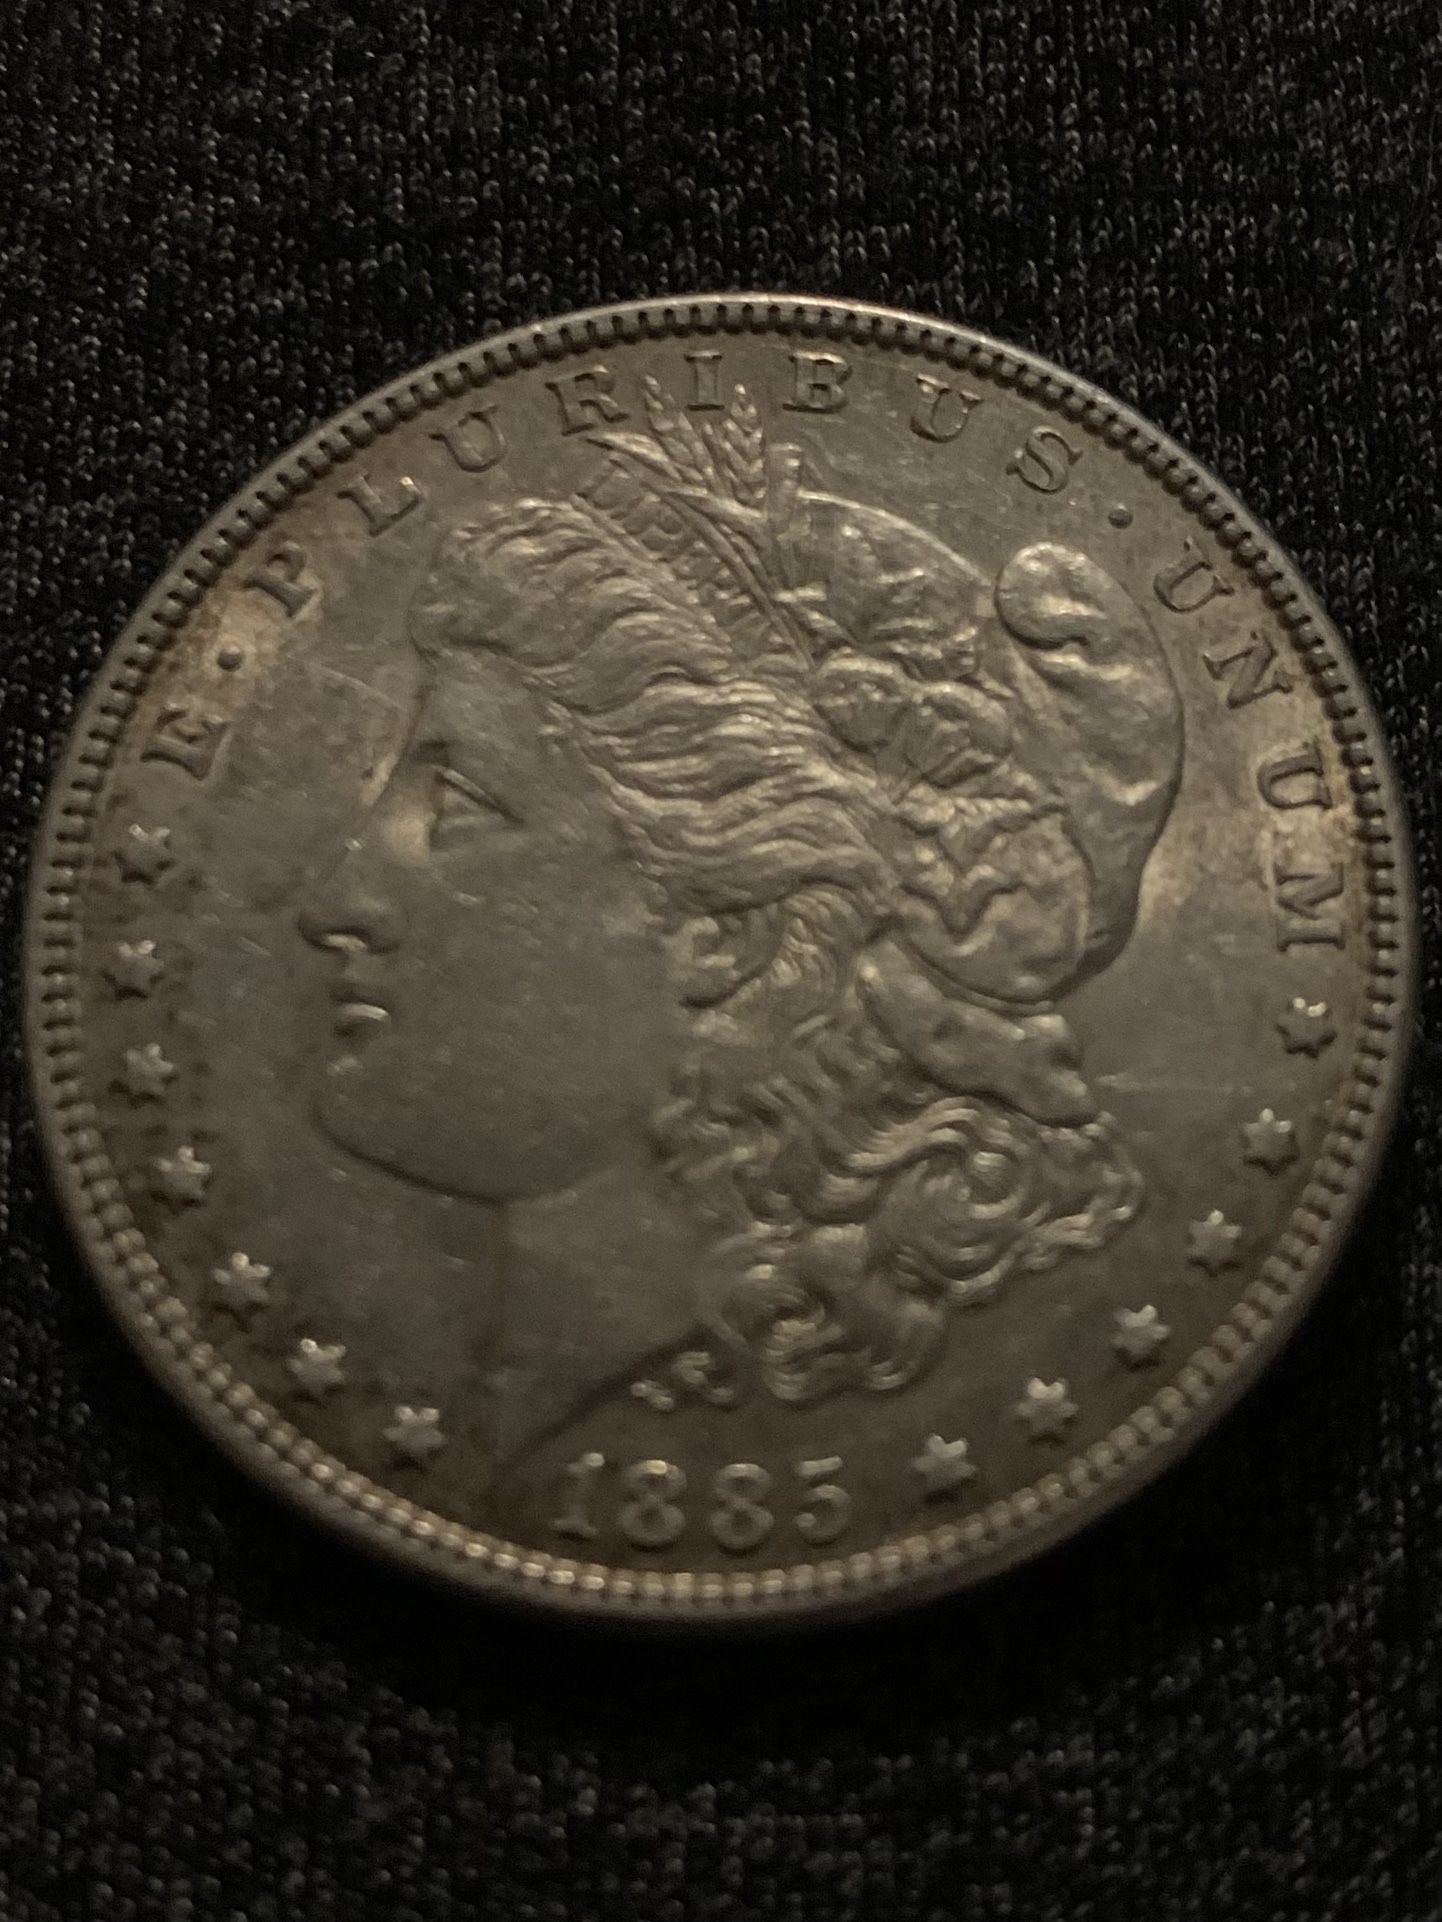 1885 Rare Silver Dollar